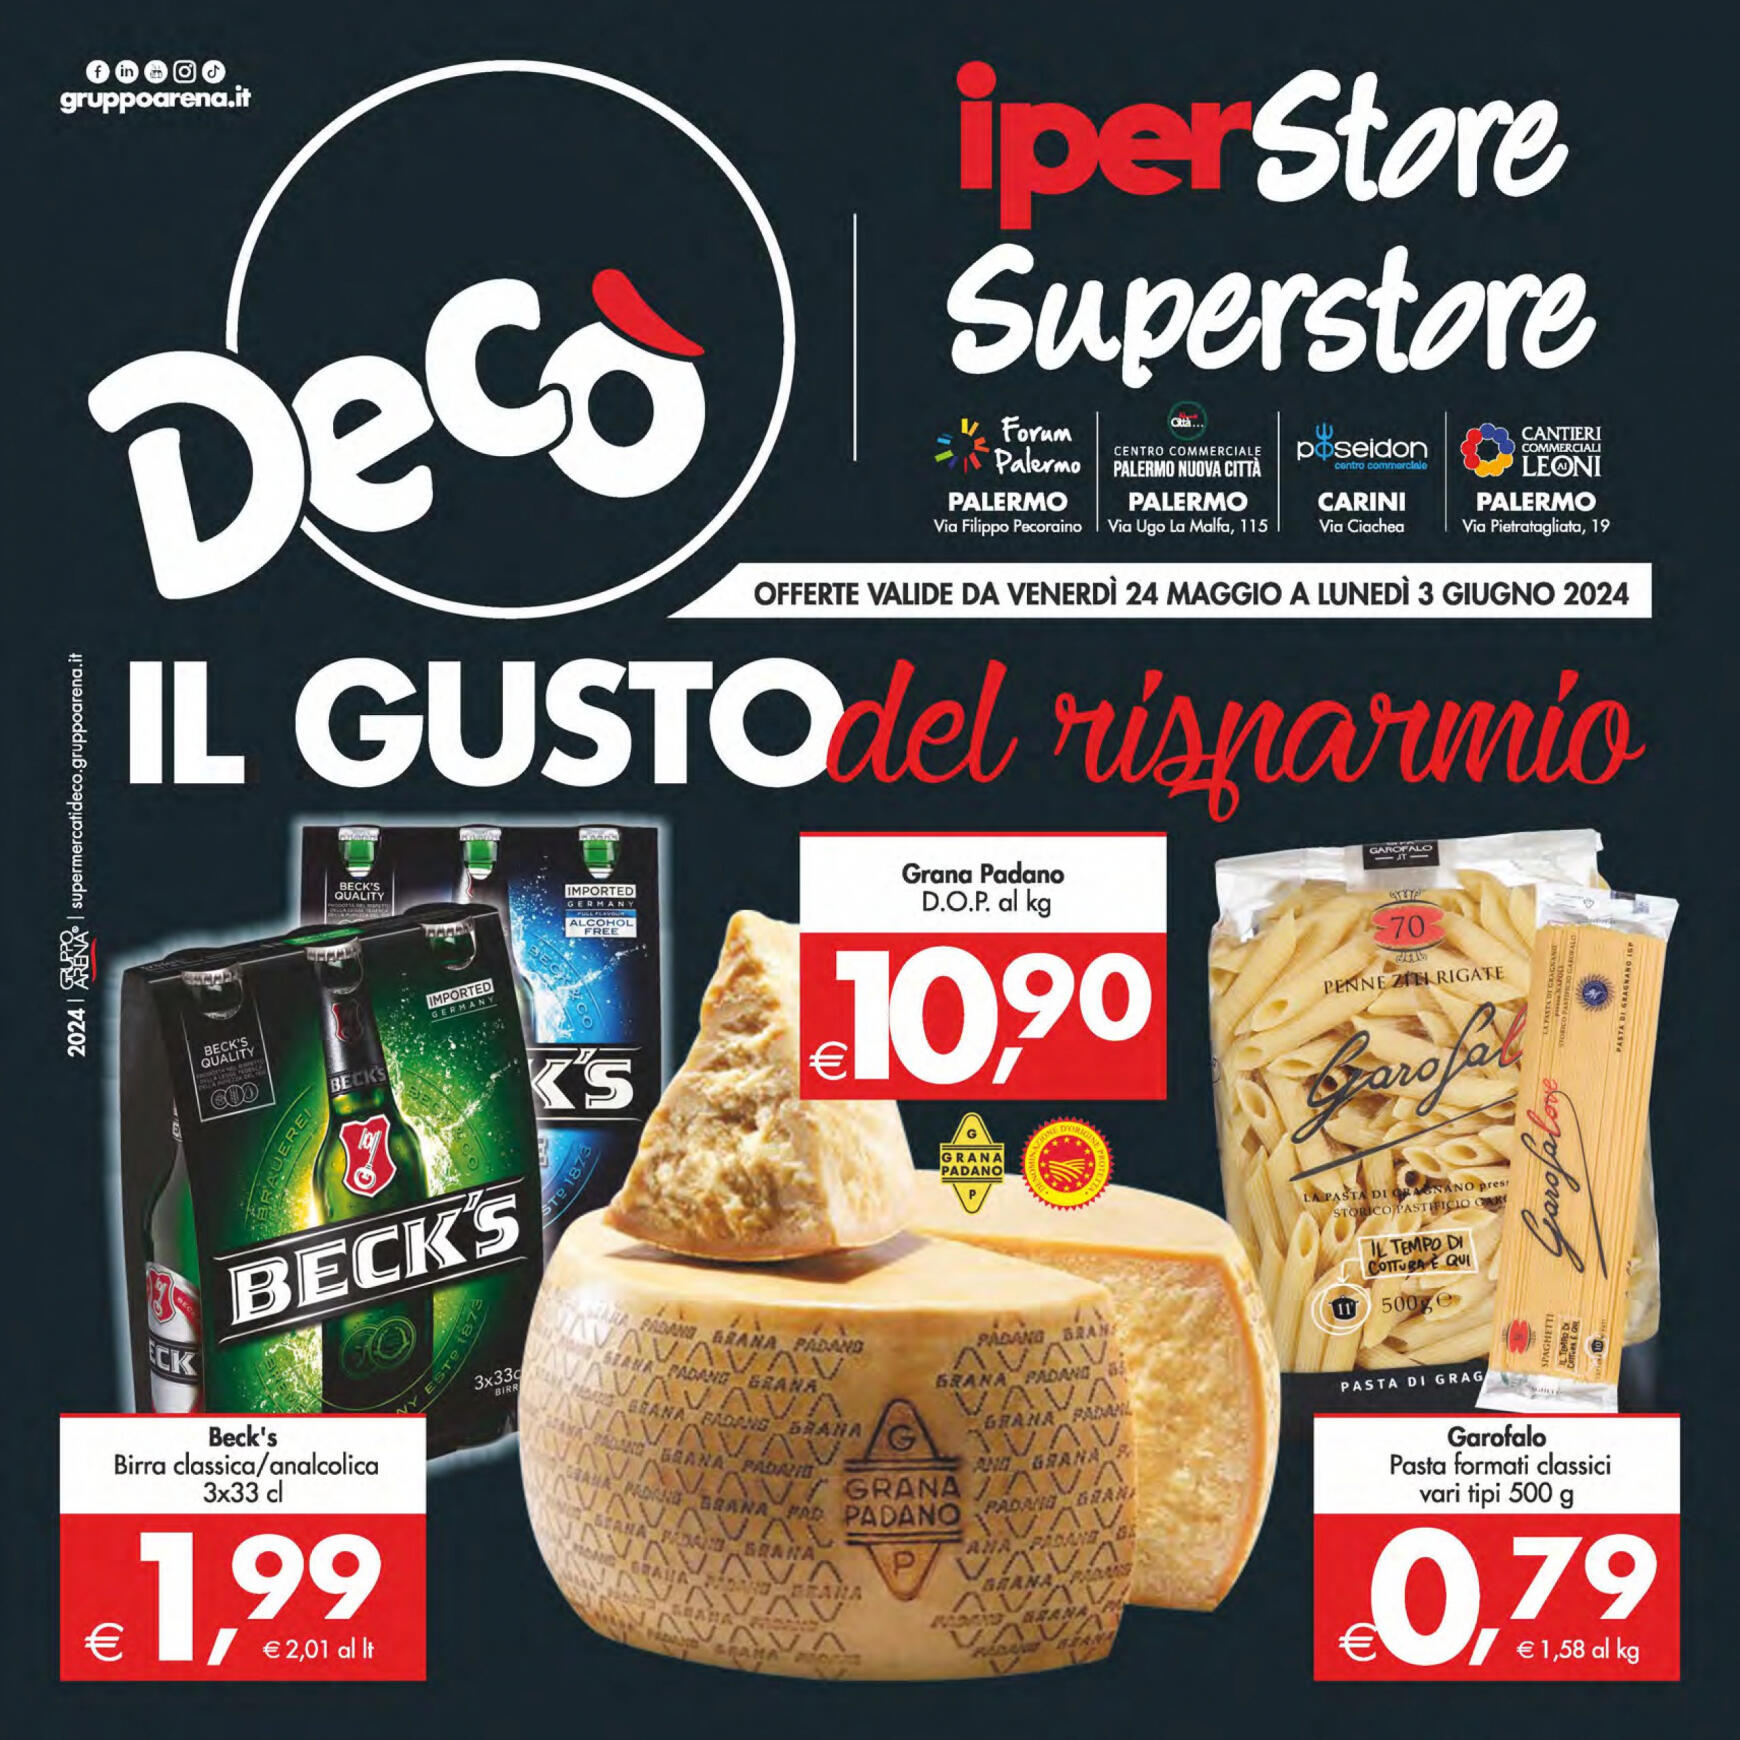 deco - Nuovo volantino Decò - Iperstore/Superstore Deco' Palermo 24.05. - 03.06.